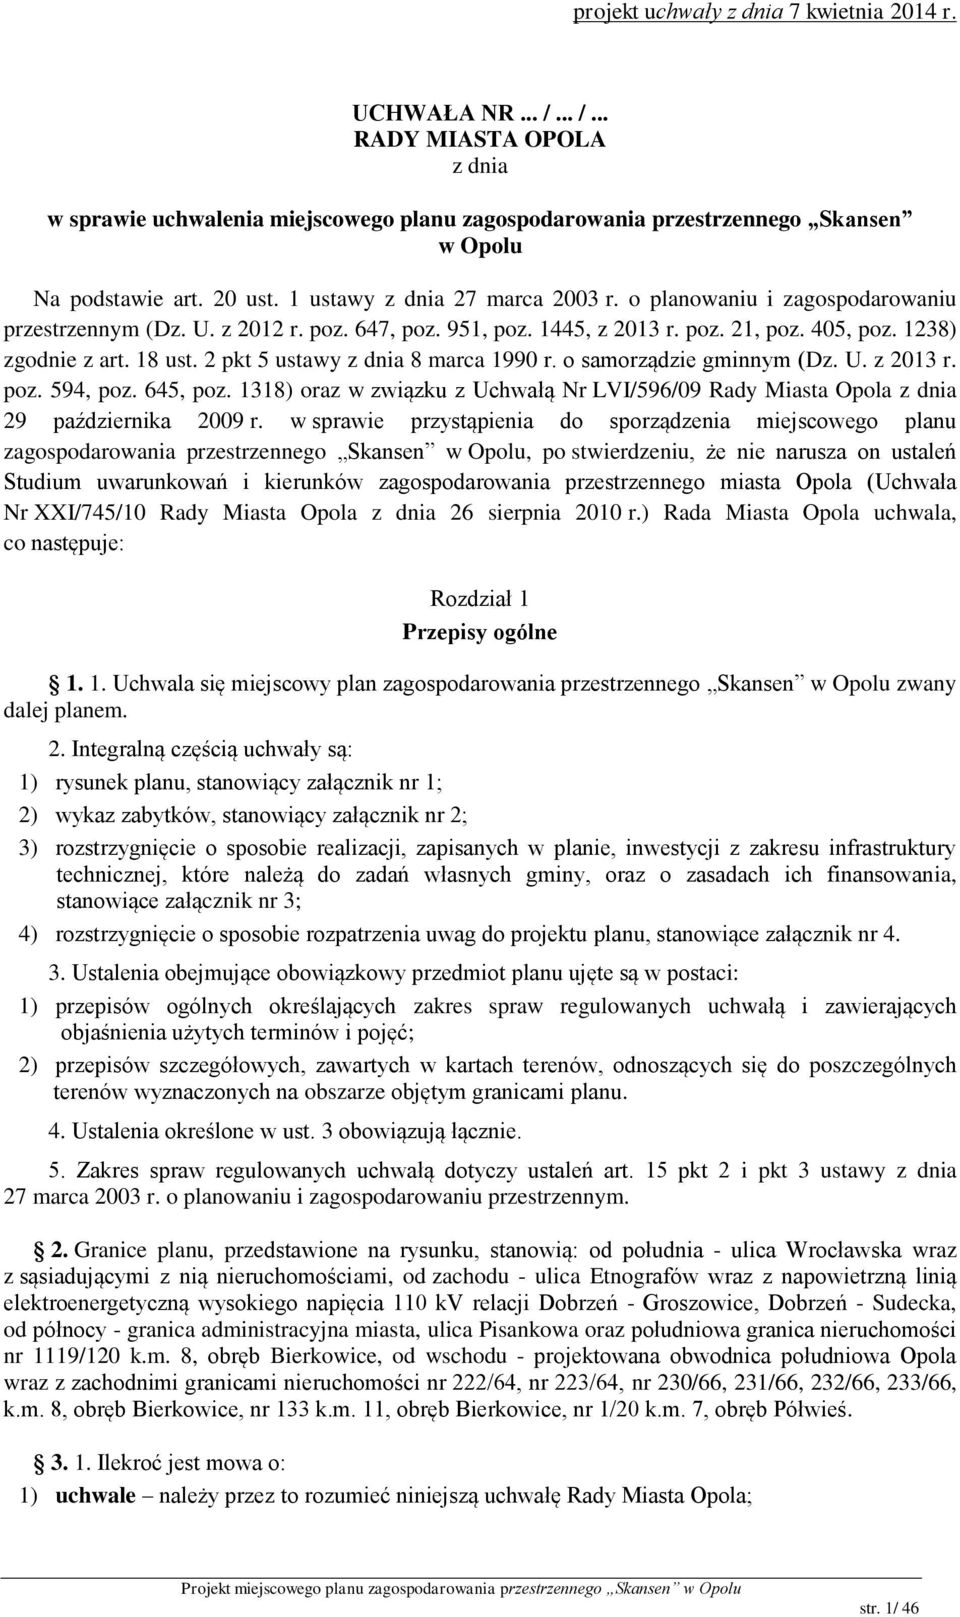 2 pkt 5 ustawy z dnia 8 marca 1990 r. o samorządzie gminnym (Dz. U. z 2013 r. poz. 594, poz. 645, poz. 1318) oraz w związku z Uchwałą Nr LVI/596/09 Rady Miasta Opola z dnia 29 października 2009 r.